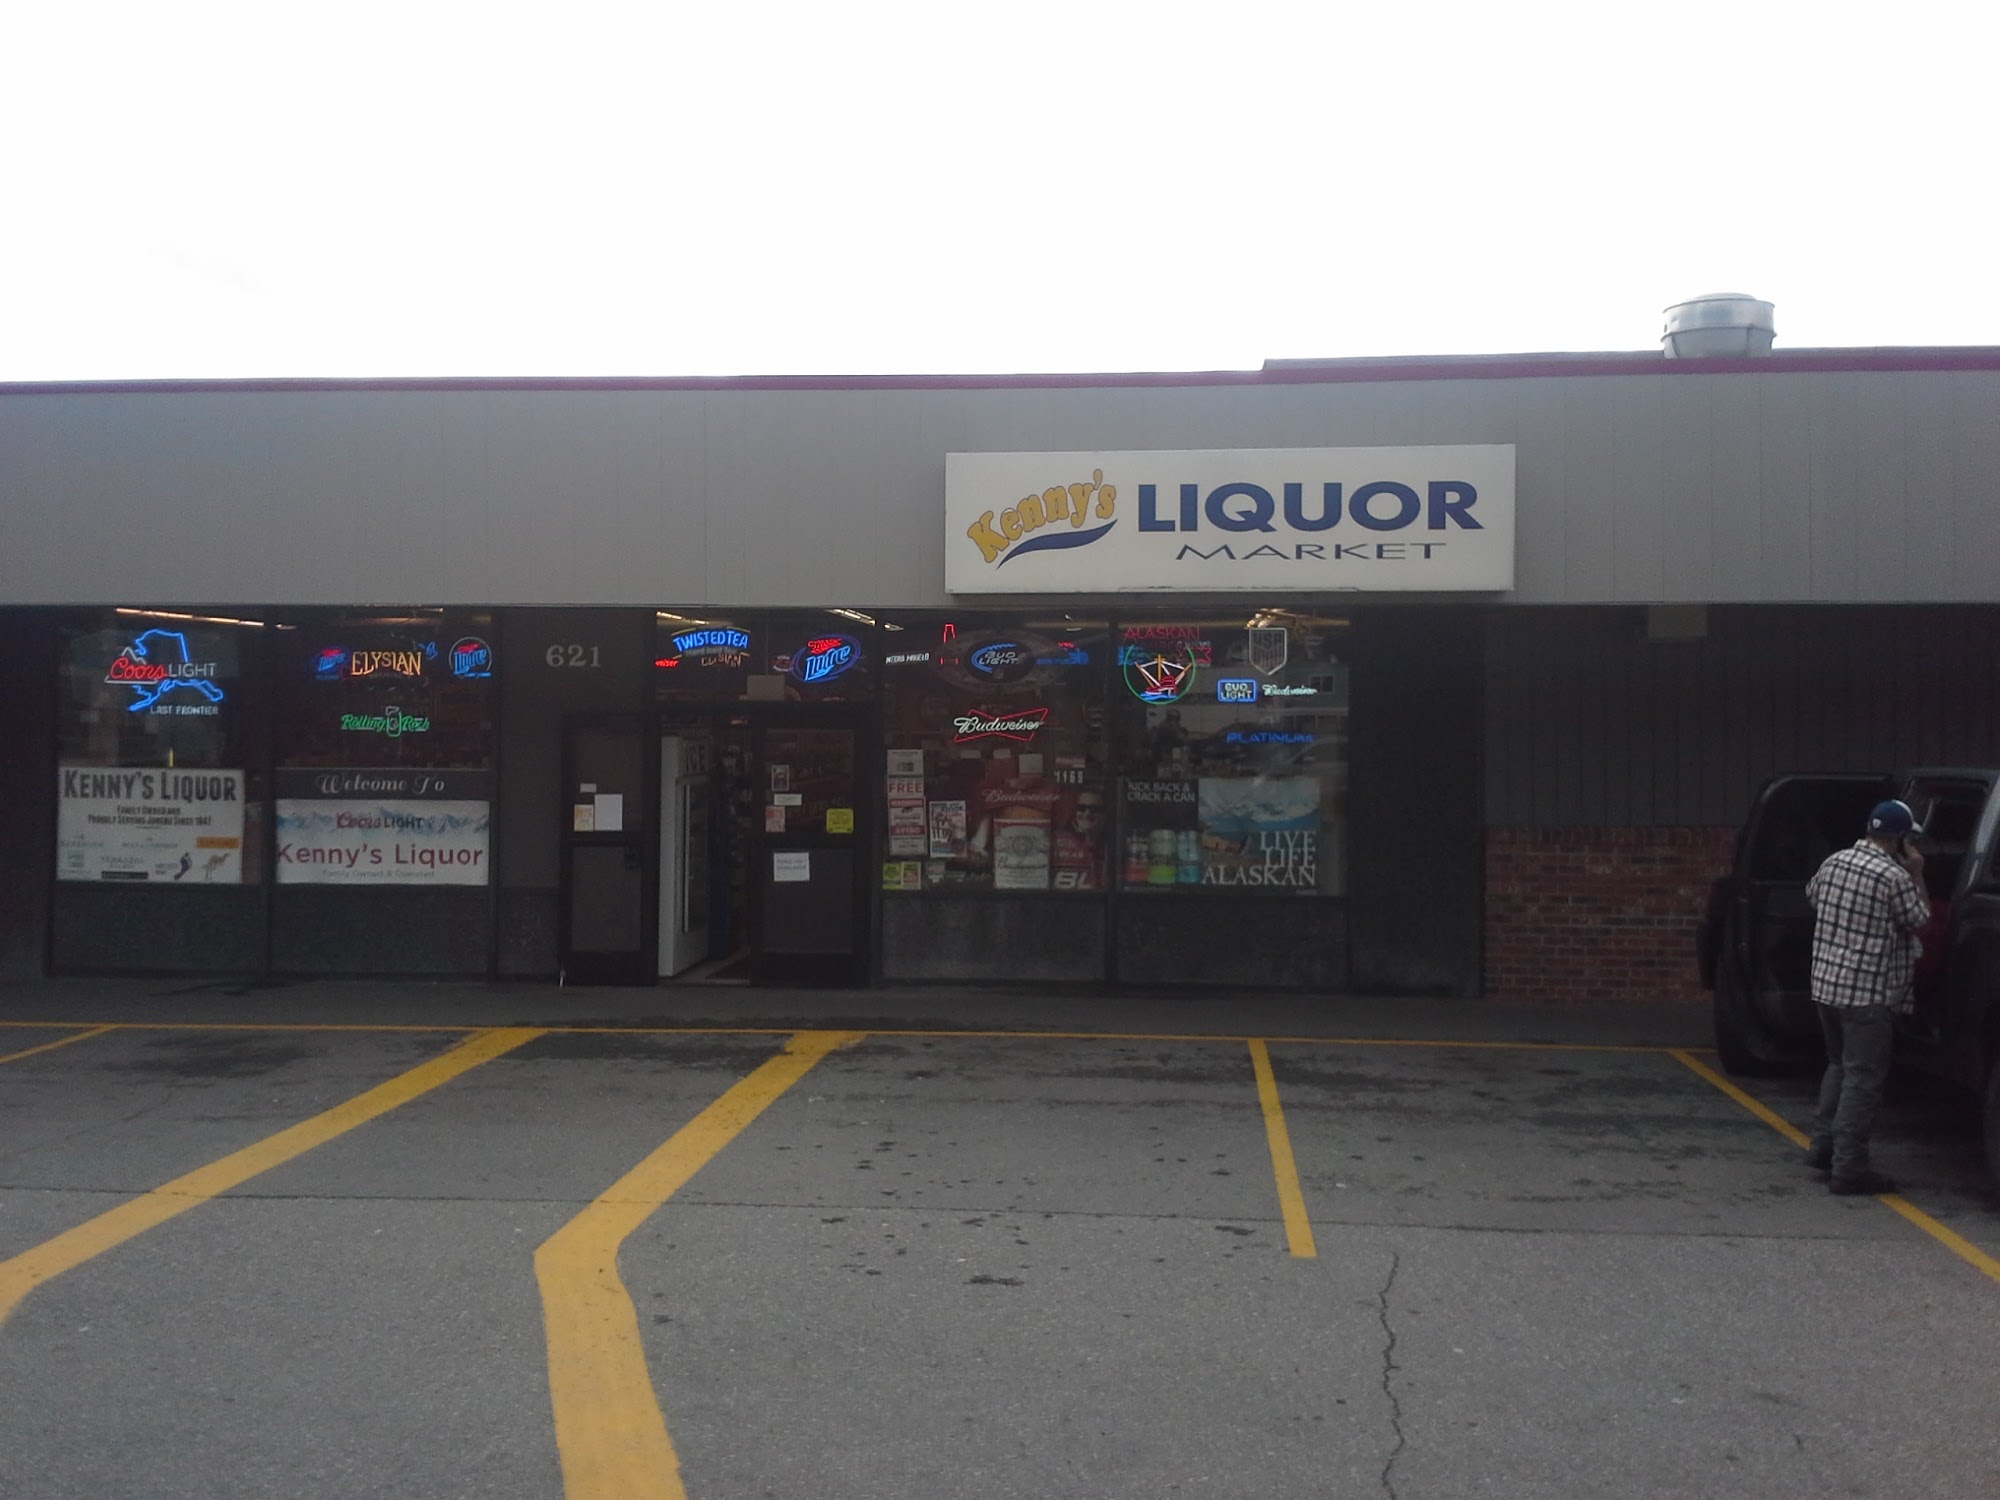 Kenny's Liquor Market